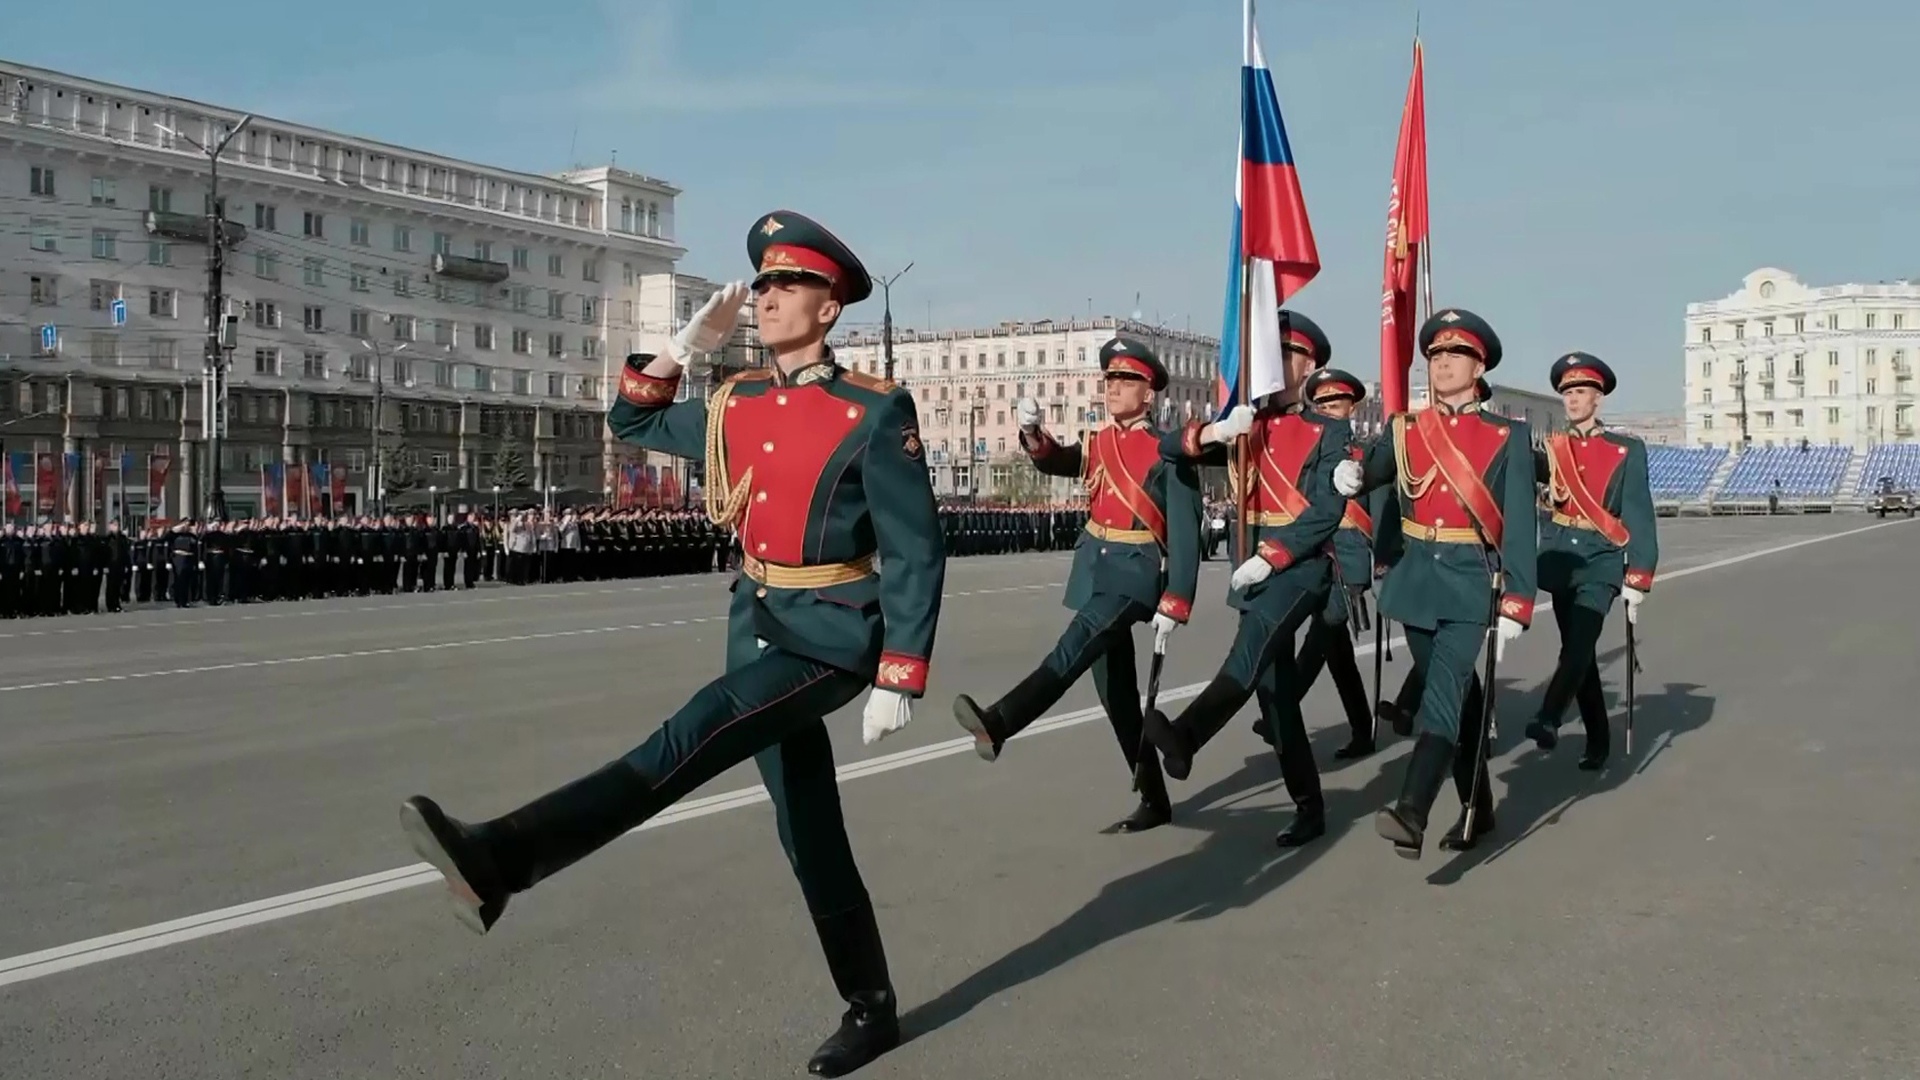 Сайт ГТРК "Южный Урал" покажет прямую трансляцию парада Победы в Челябинске